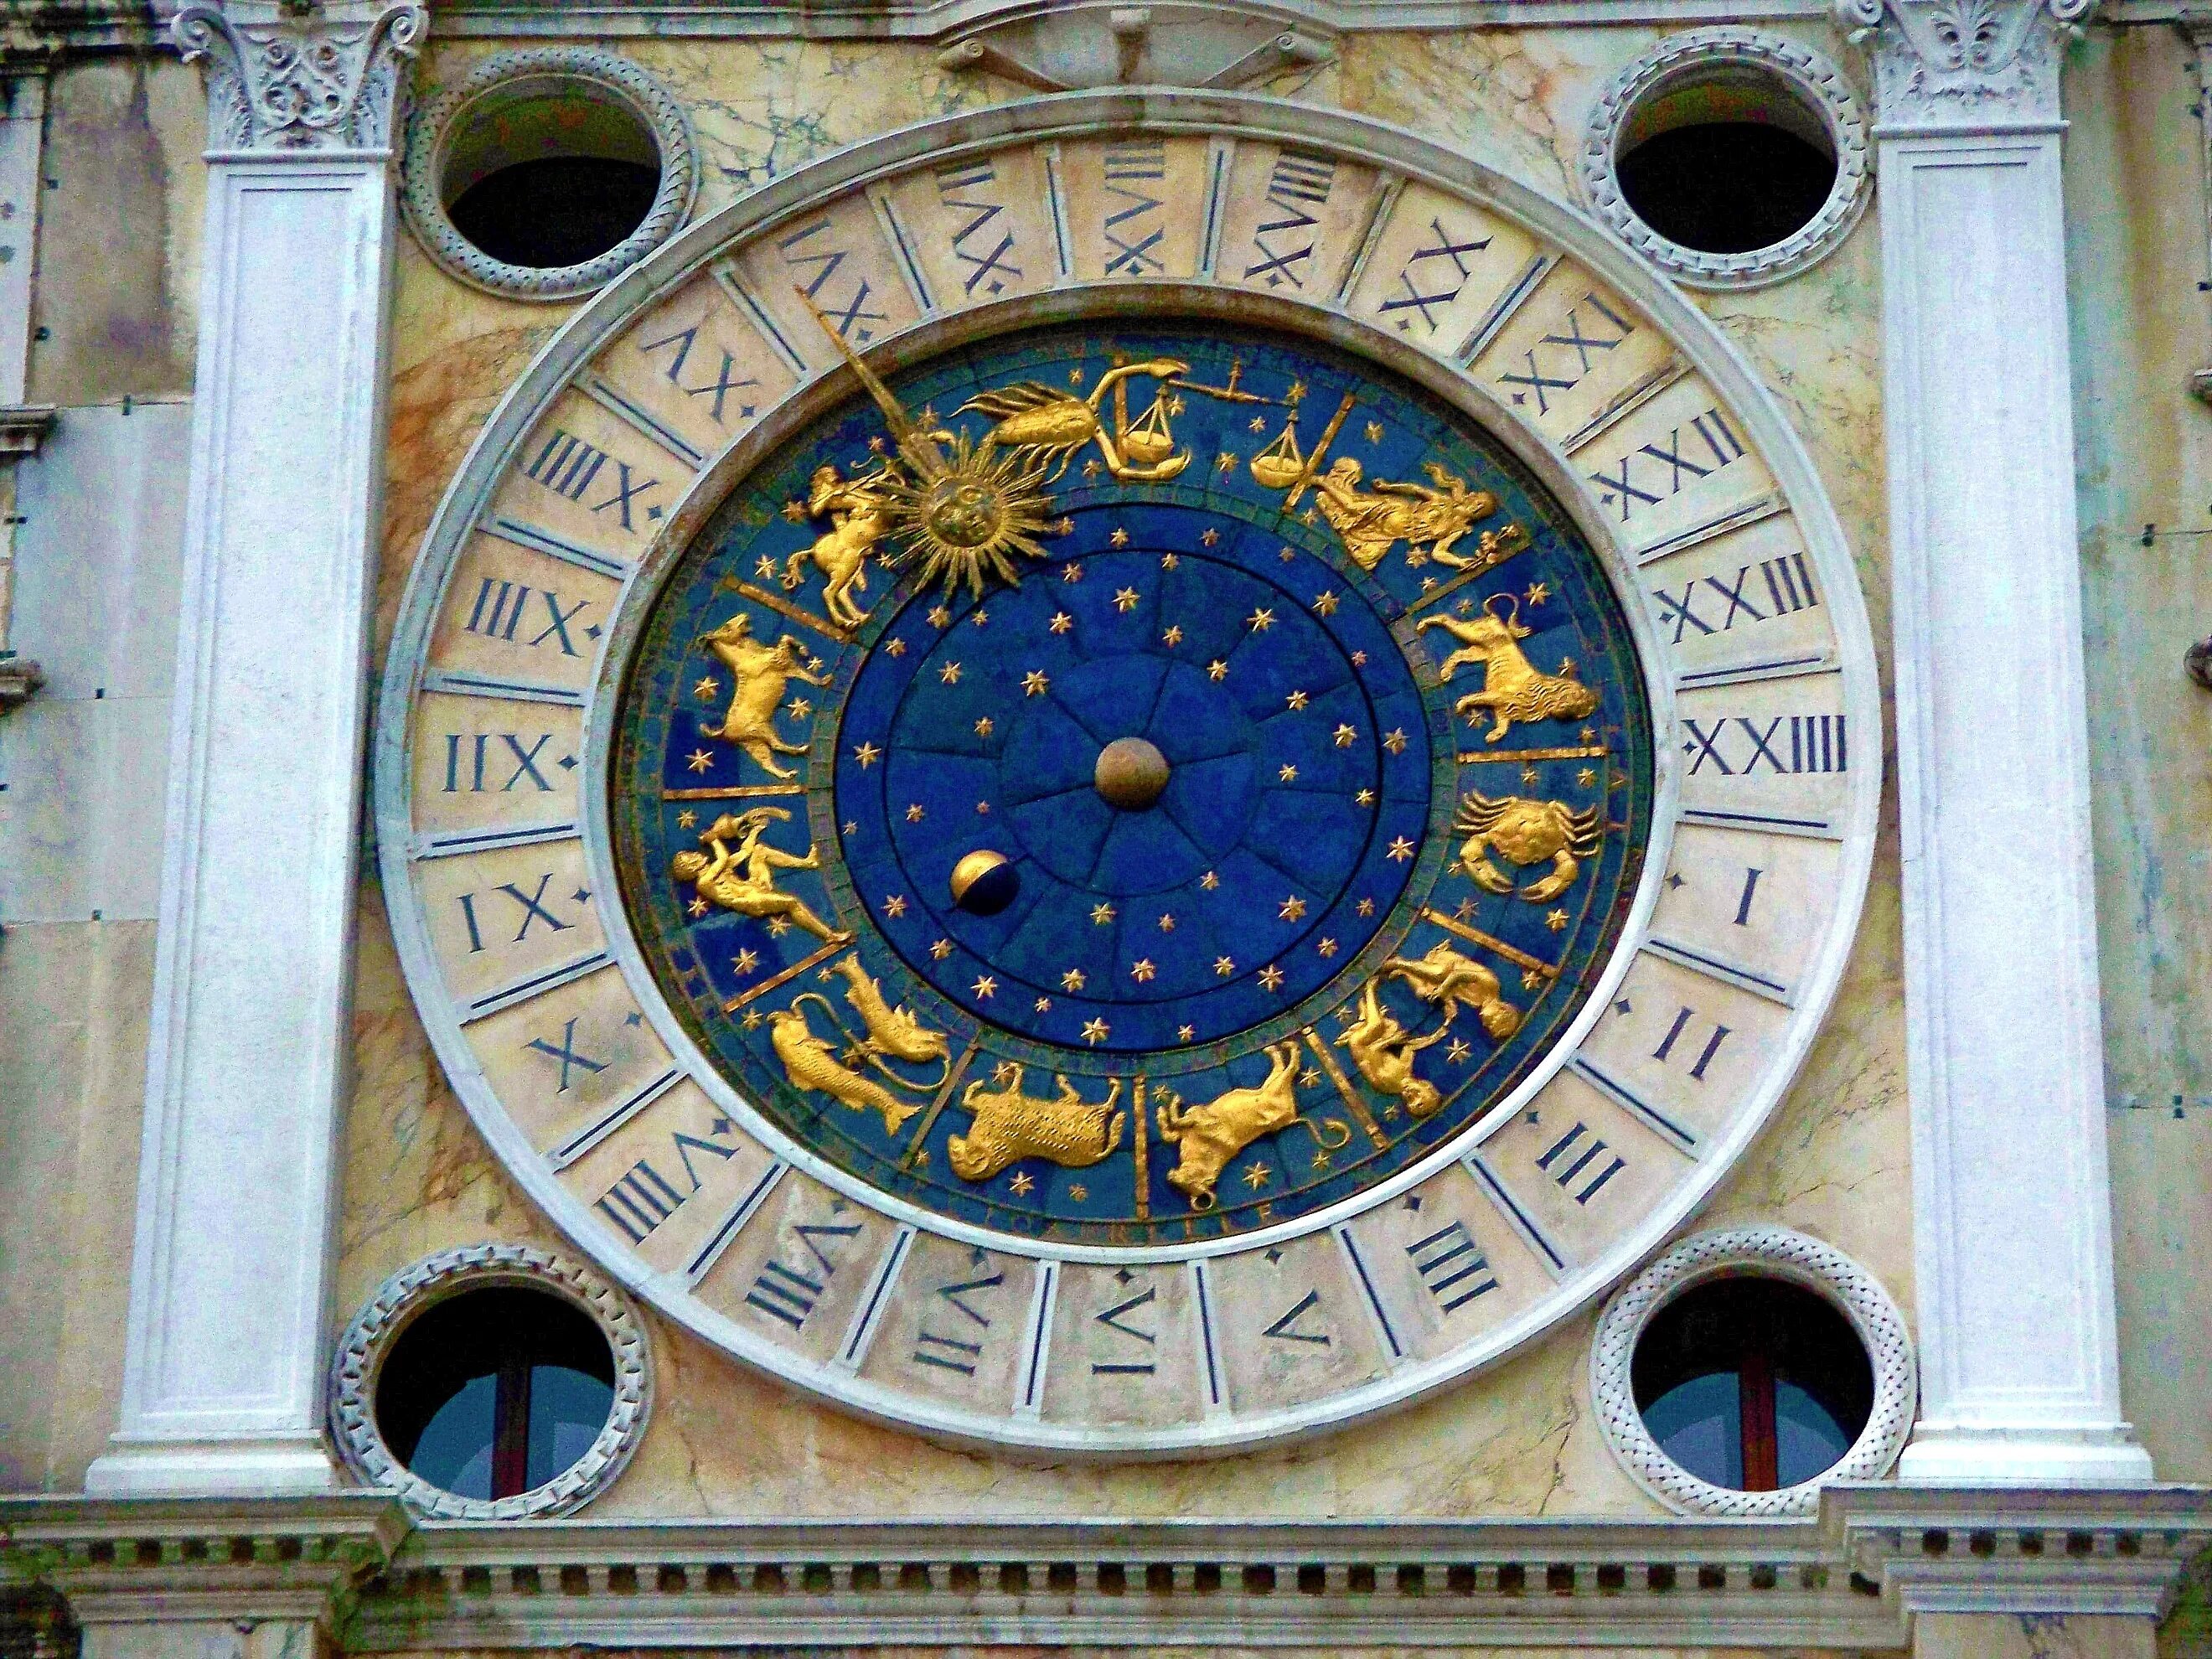 Италия часовой. Часовая башня Сан Марко. Часовая башня в Венеции на площади Сан Марко. Часы на башне Святого марка в Венеции. Астрономические часы Сан Марко Венеция.